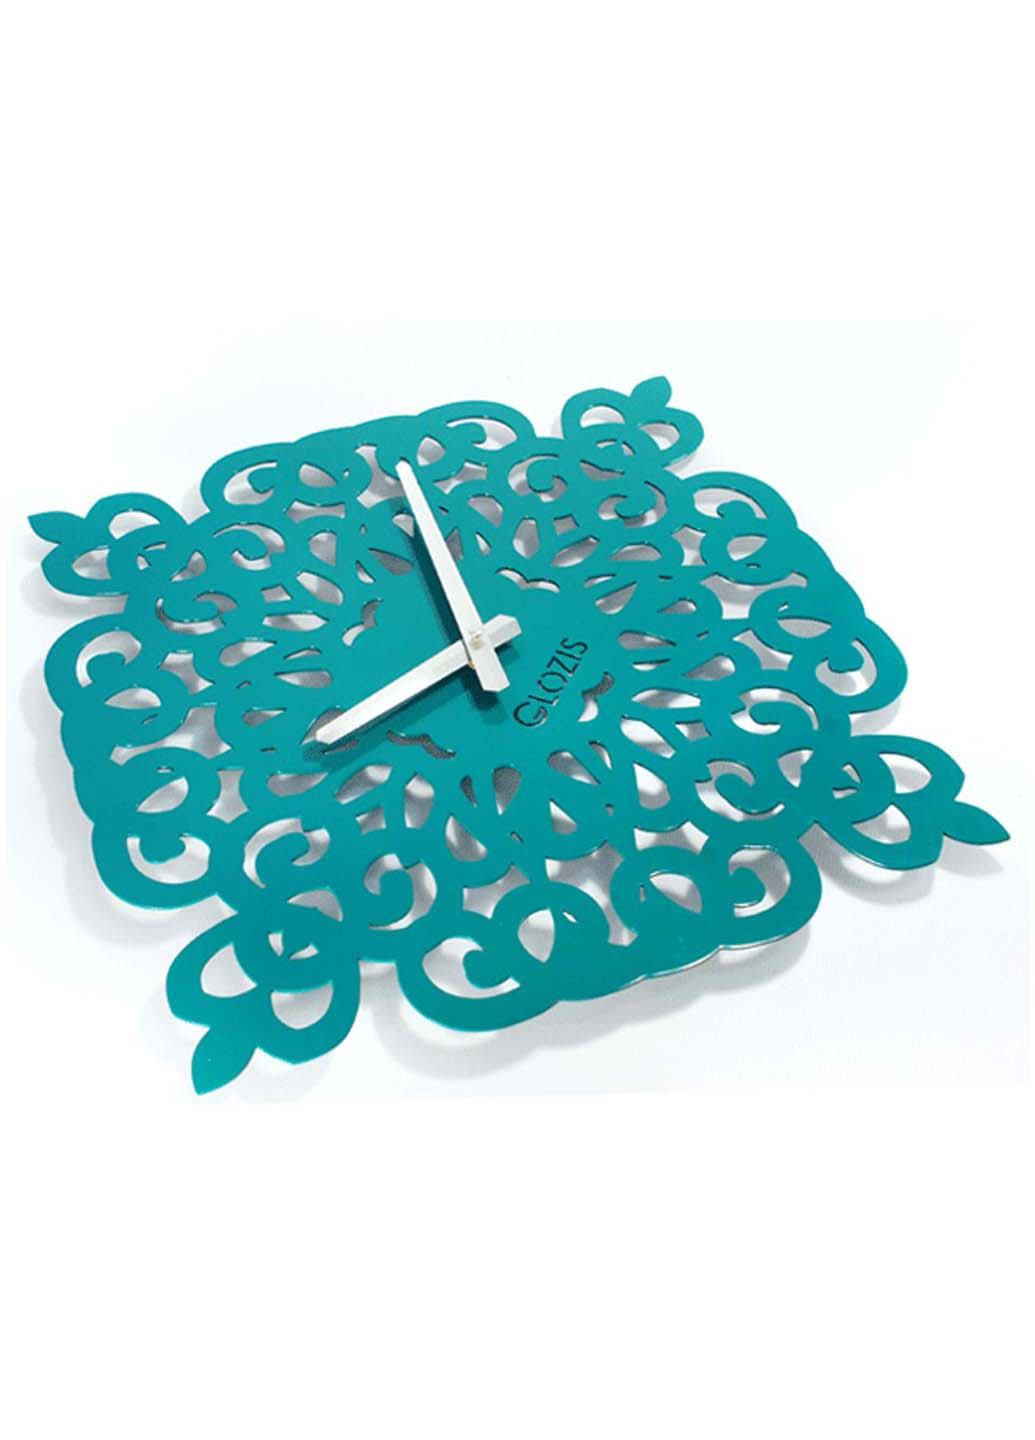 Настенные часы Glozis arab dream b-011 50х50 см (243840085)